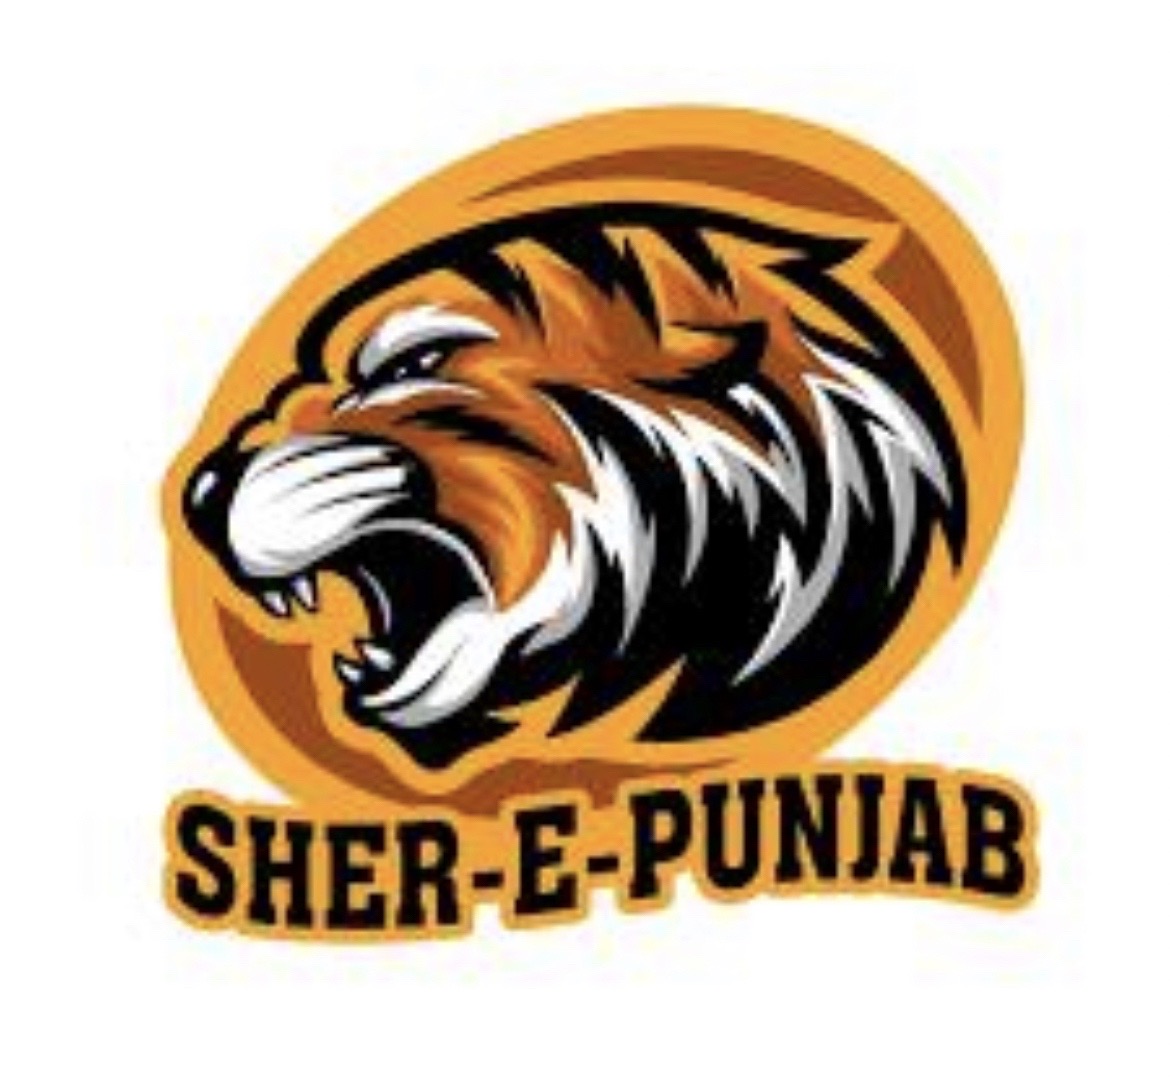 Sher-e-Punjab